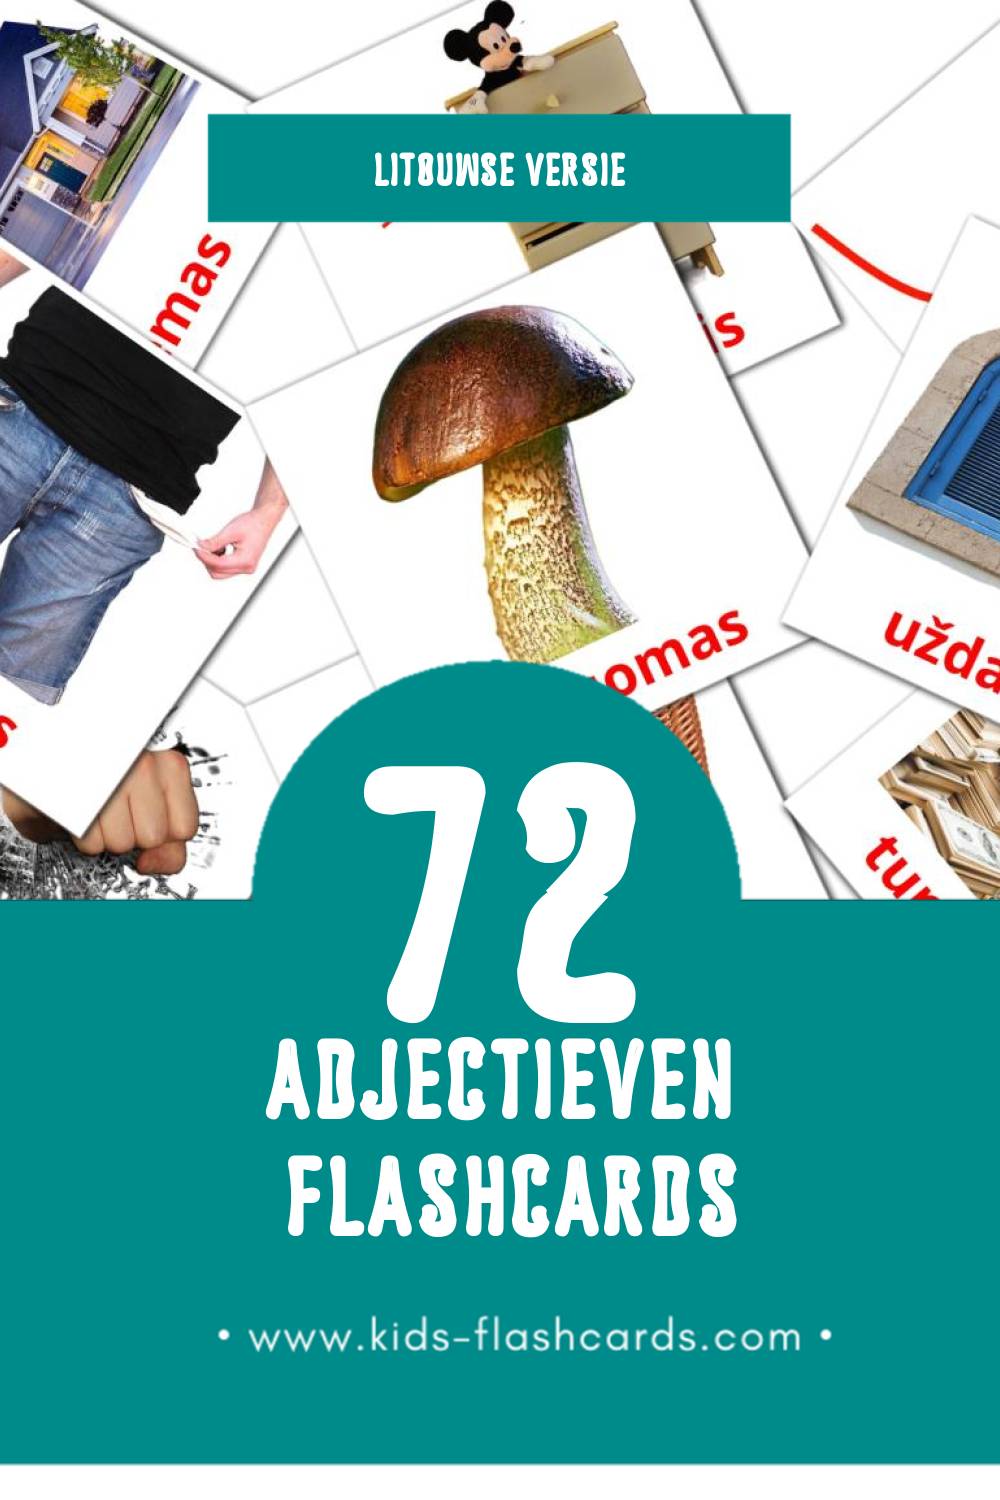 Visuele būdvardžiai Flashcards voor Kleuters (72 kaarten in het Litouws)